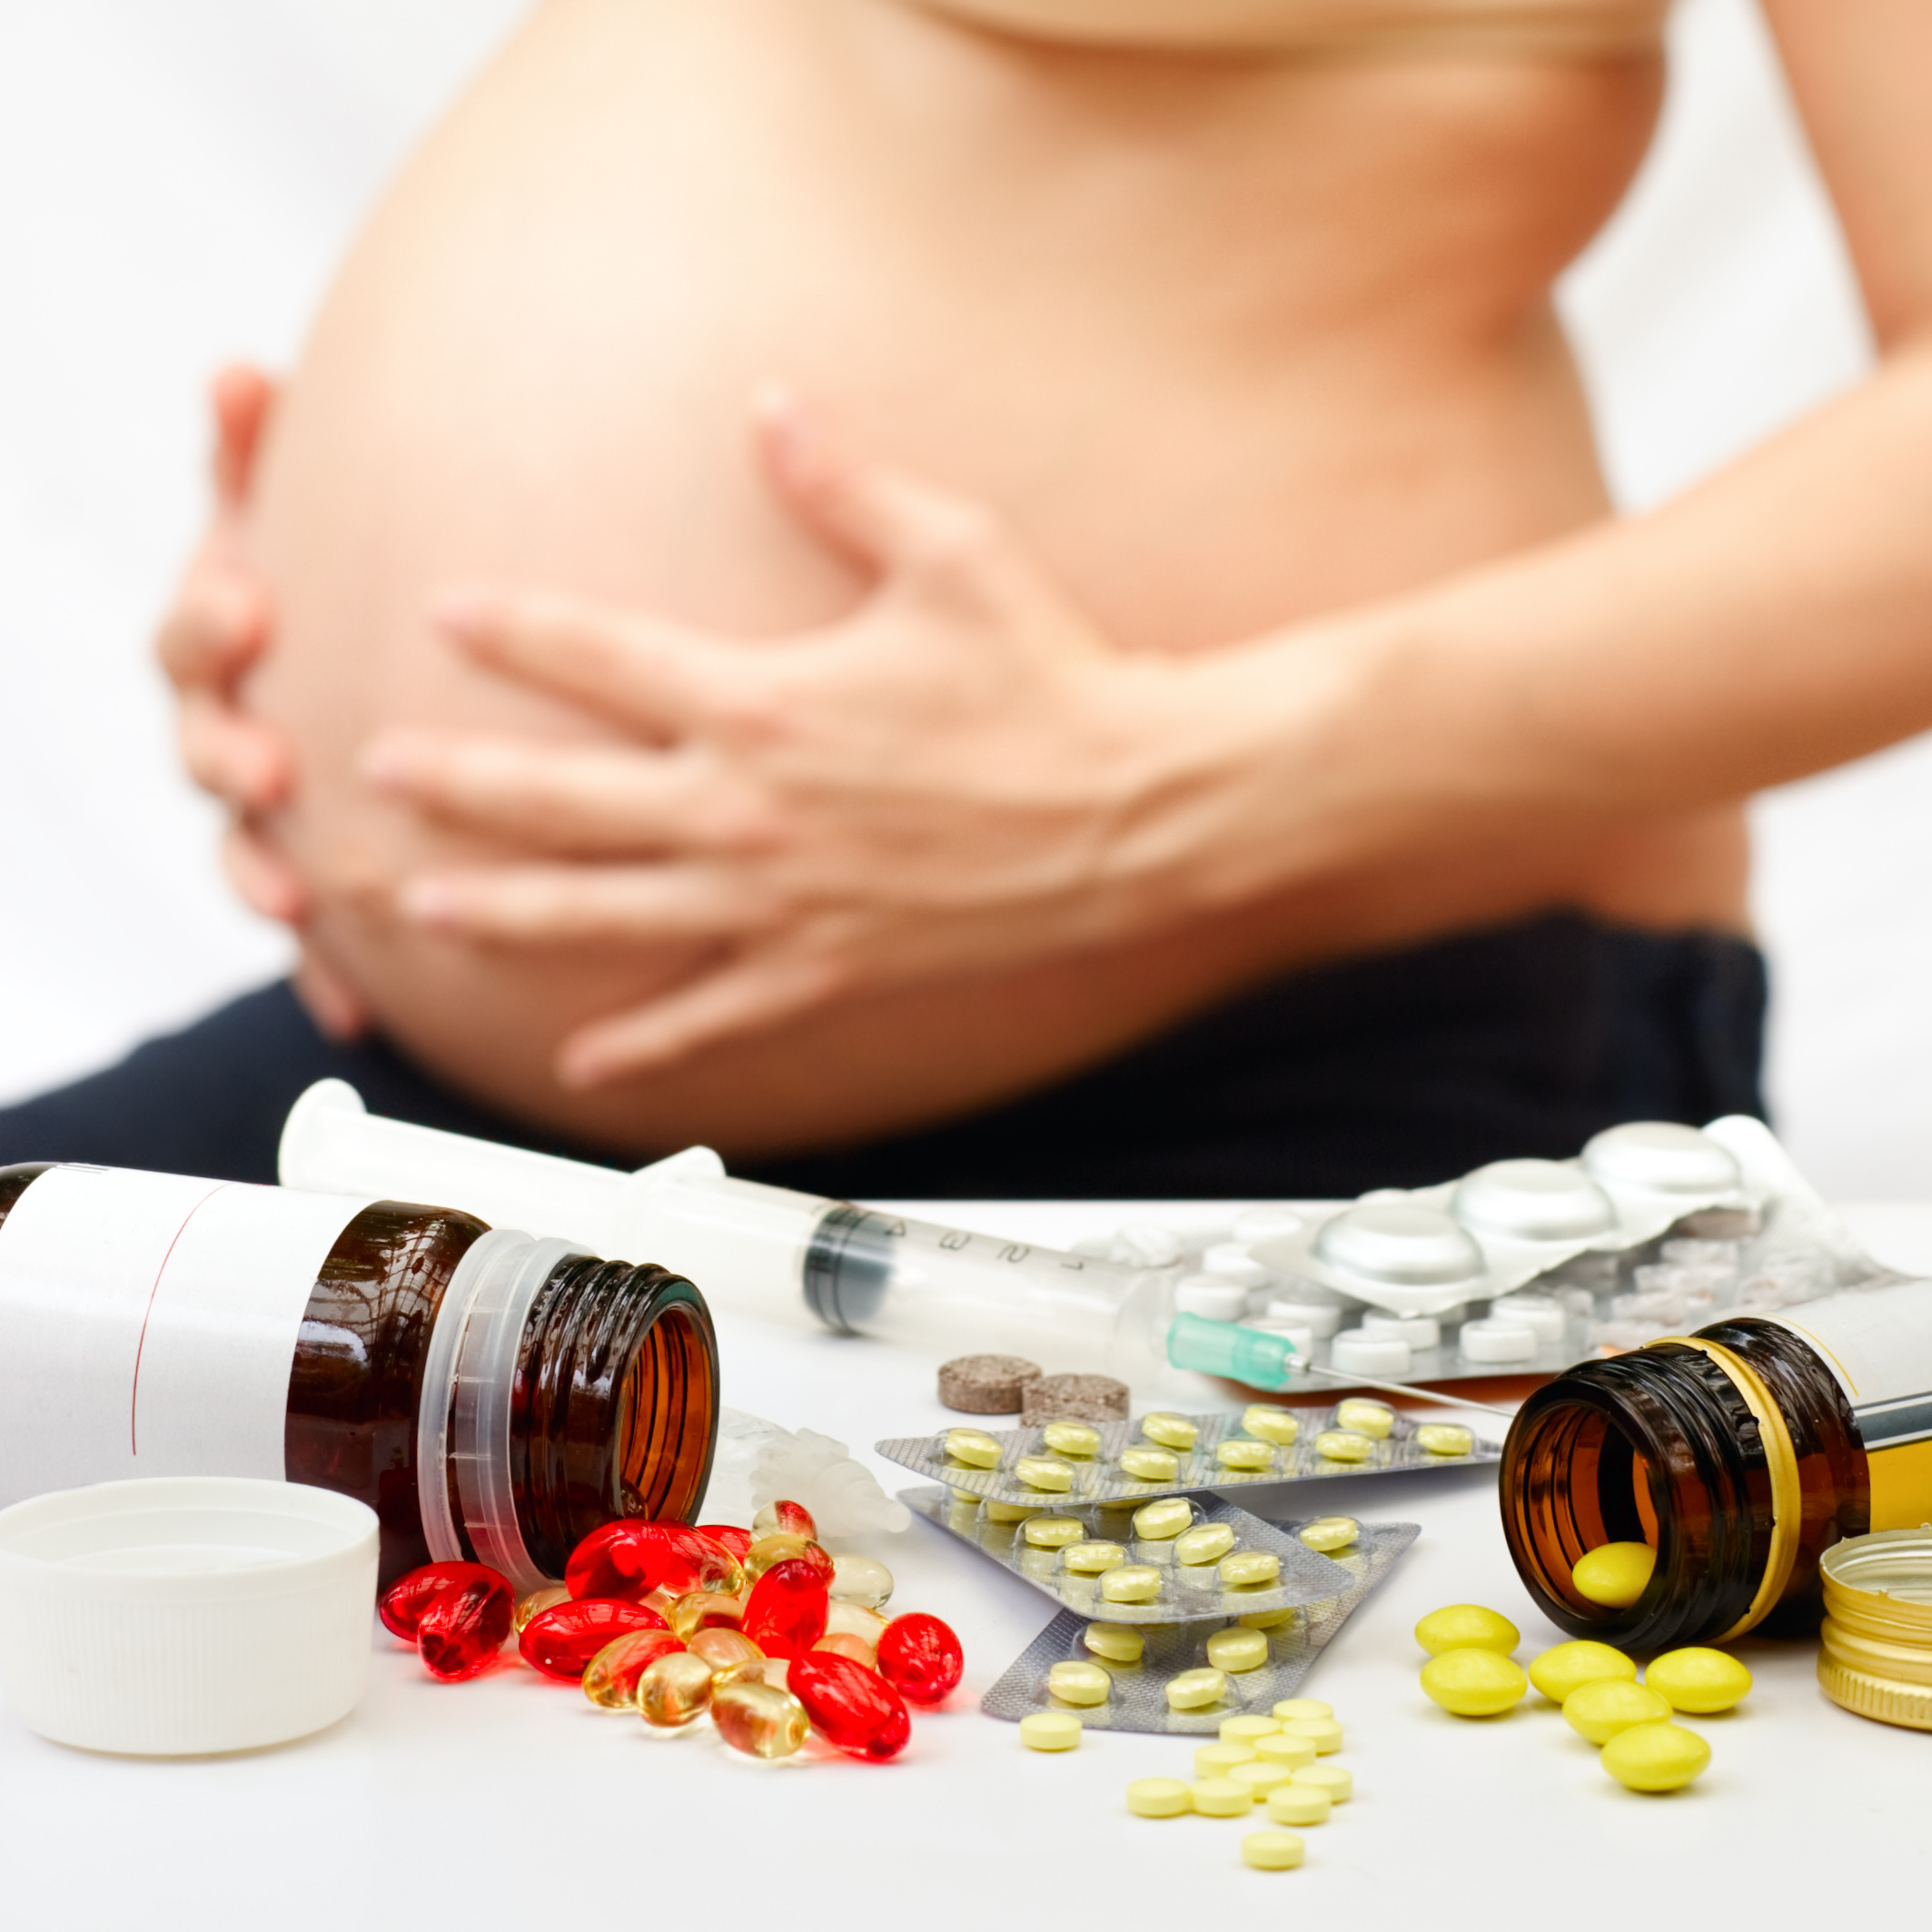 Une femme enceinte devrait toujours consulter son médecin avant de prendre un traitement médicamenteux. Crédits DR.